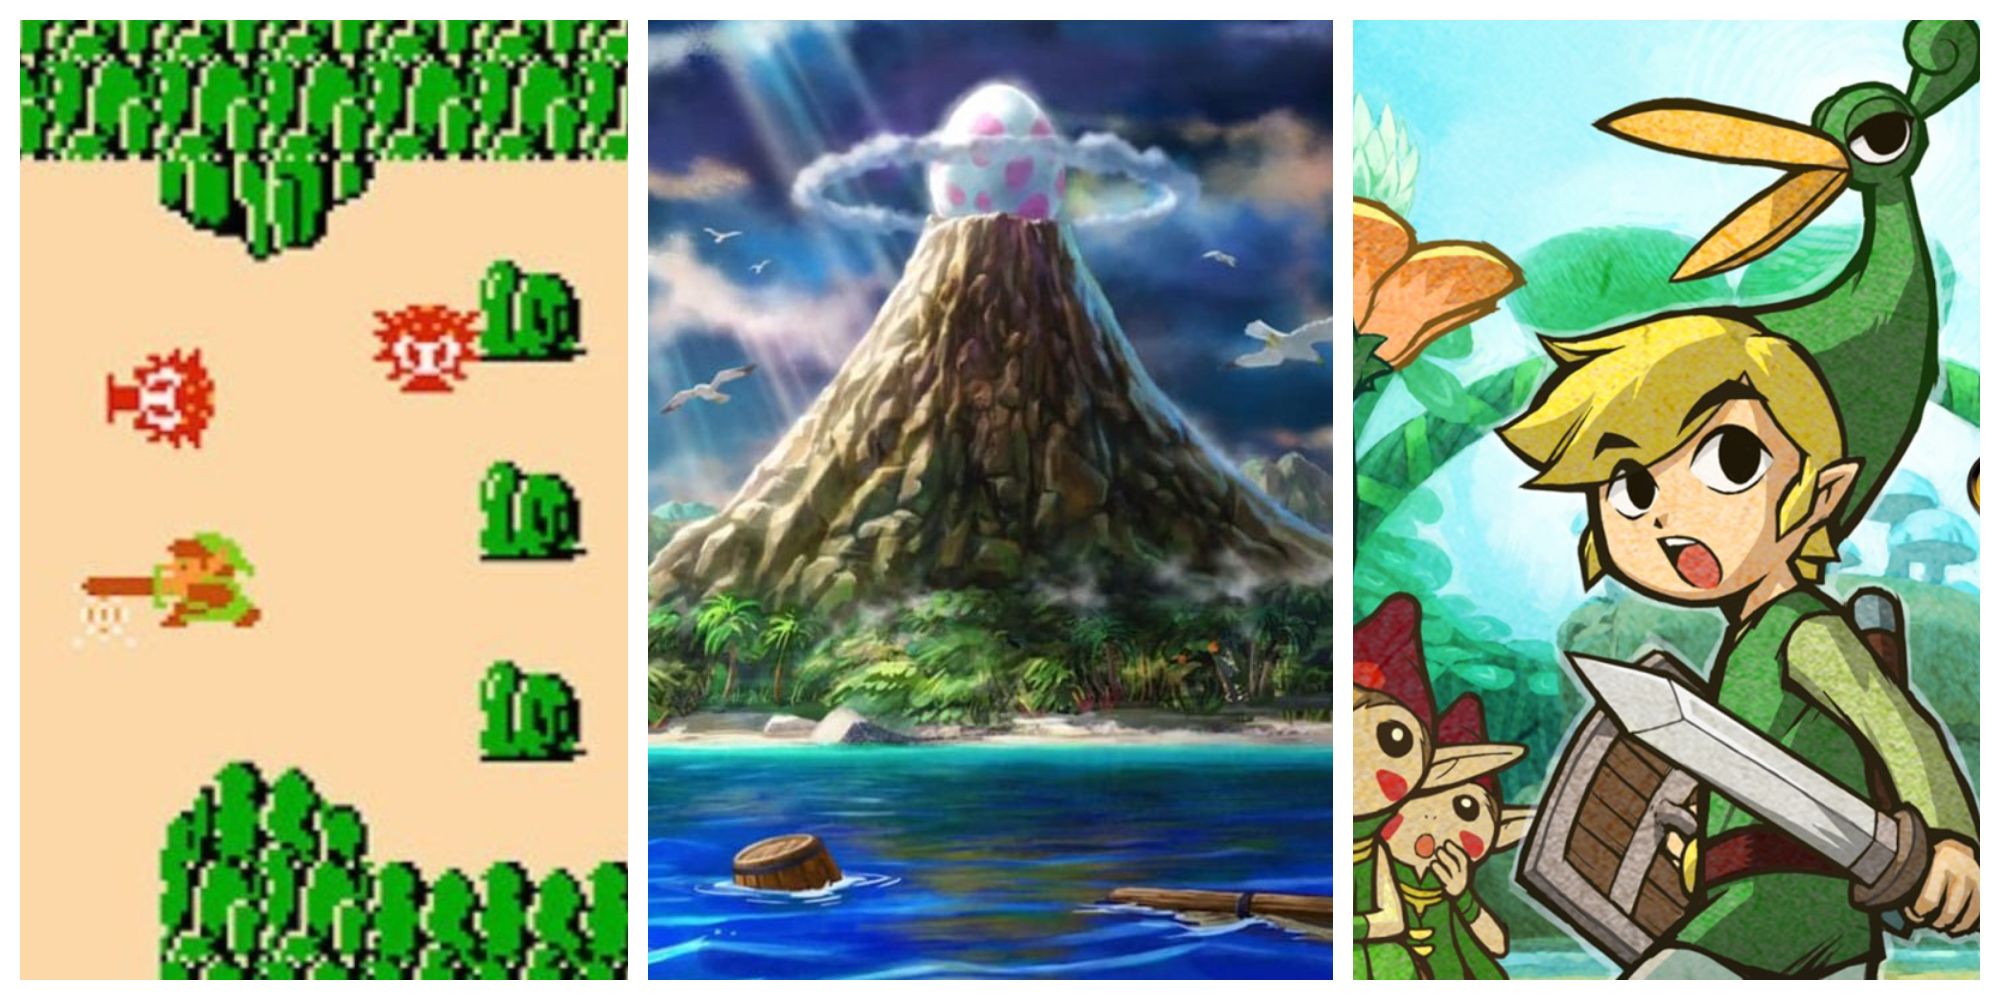 The Legend Of Zelda: 10 Best 2D Games, According To Metacritic